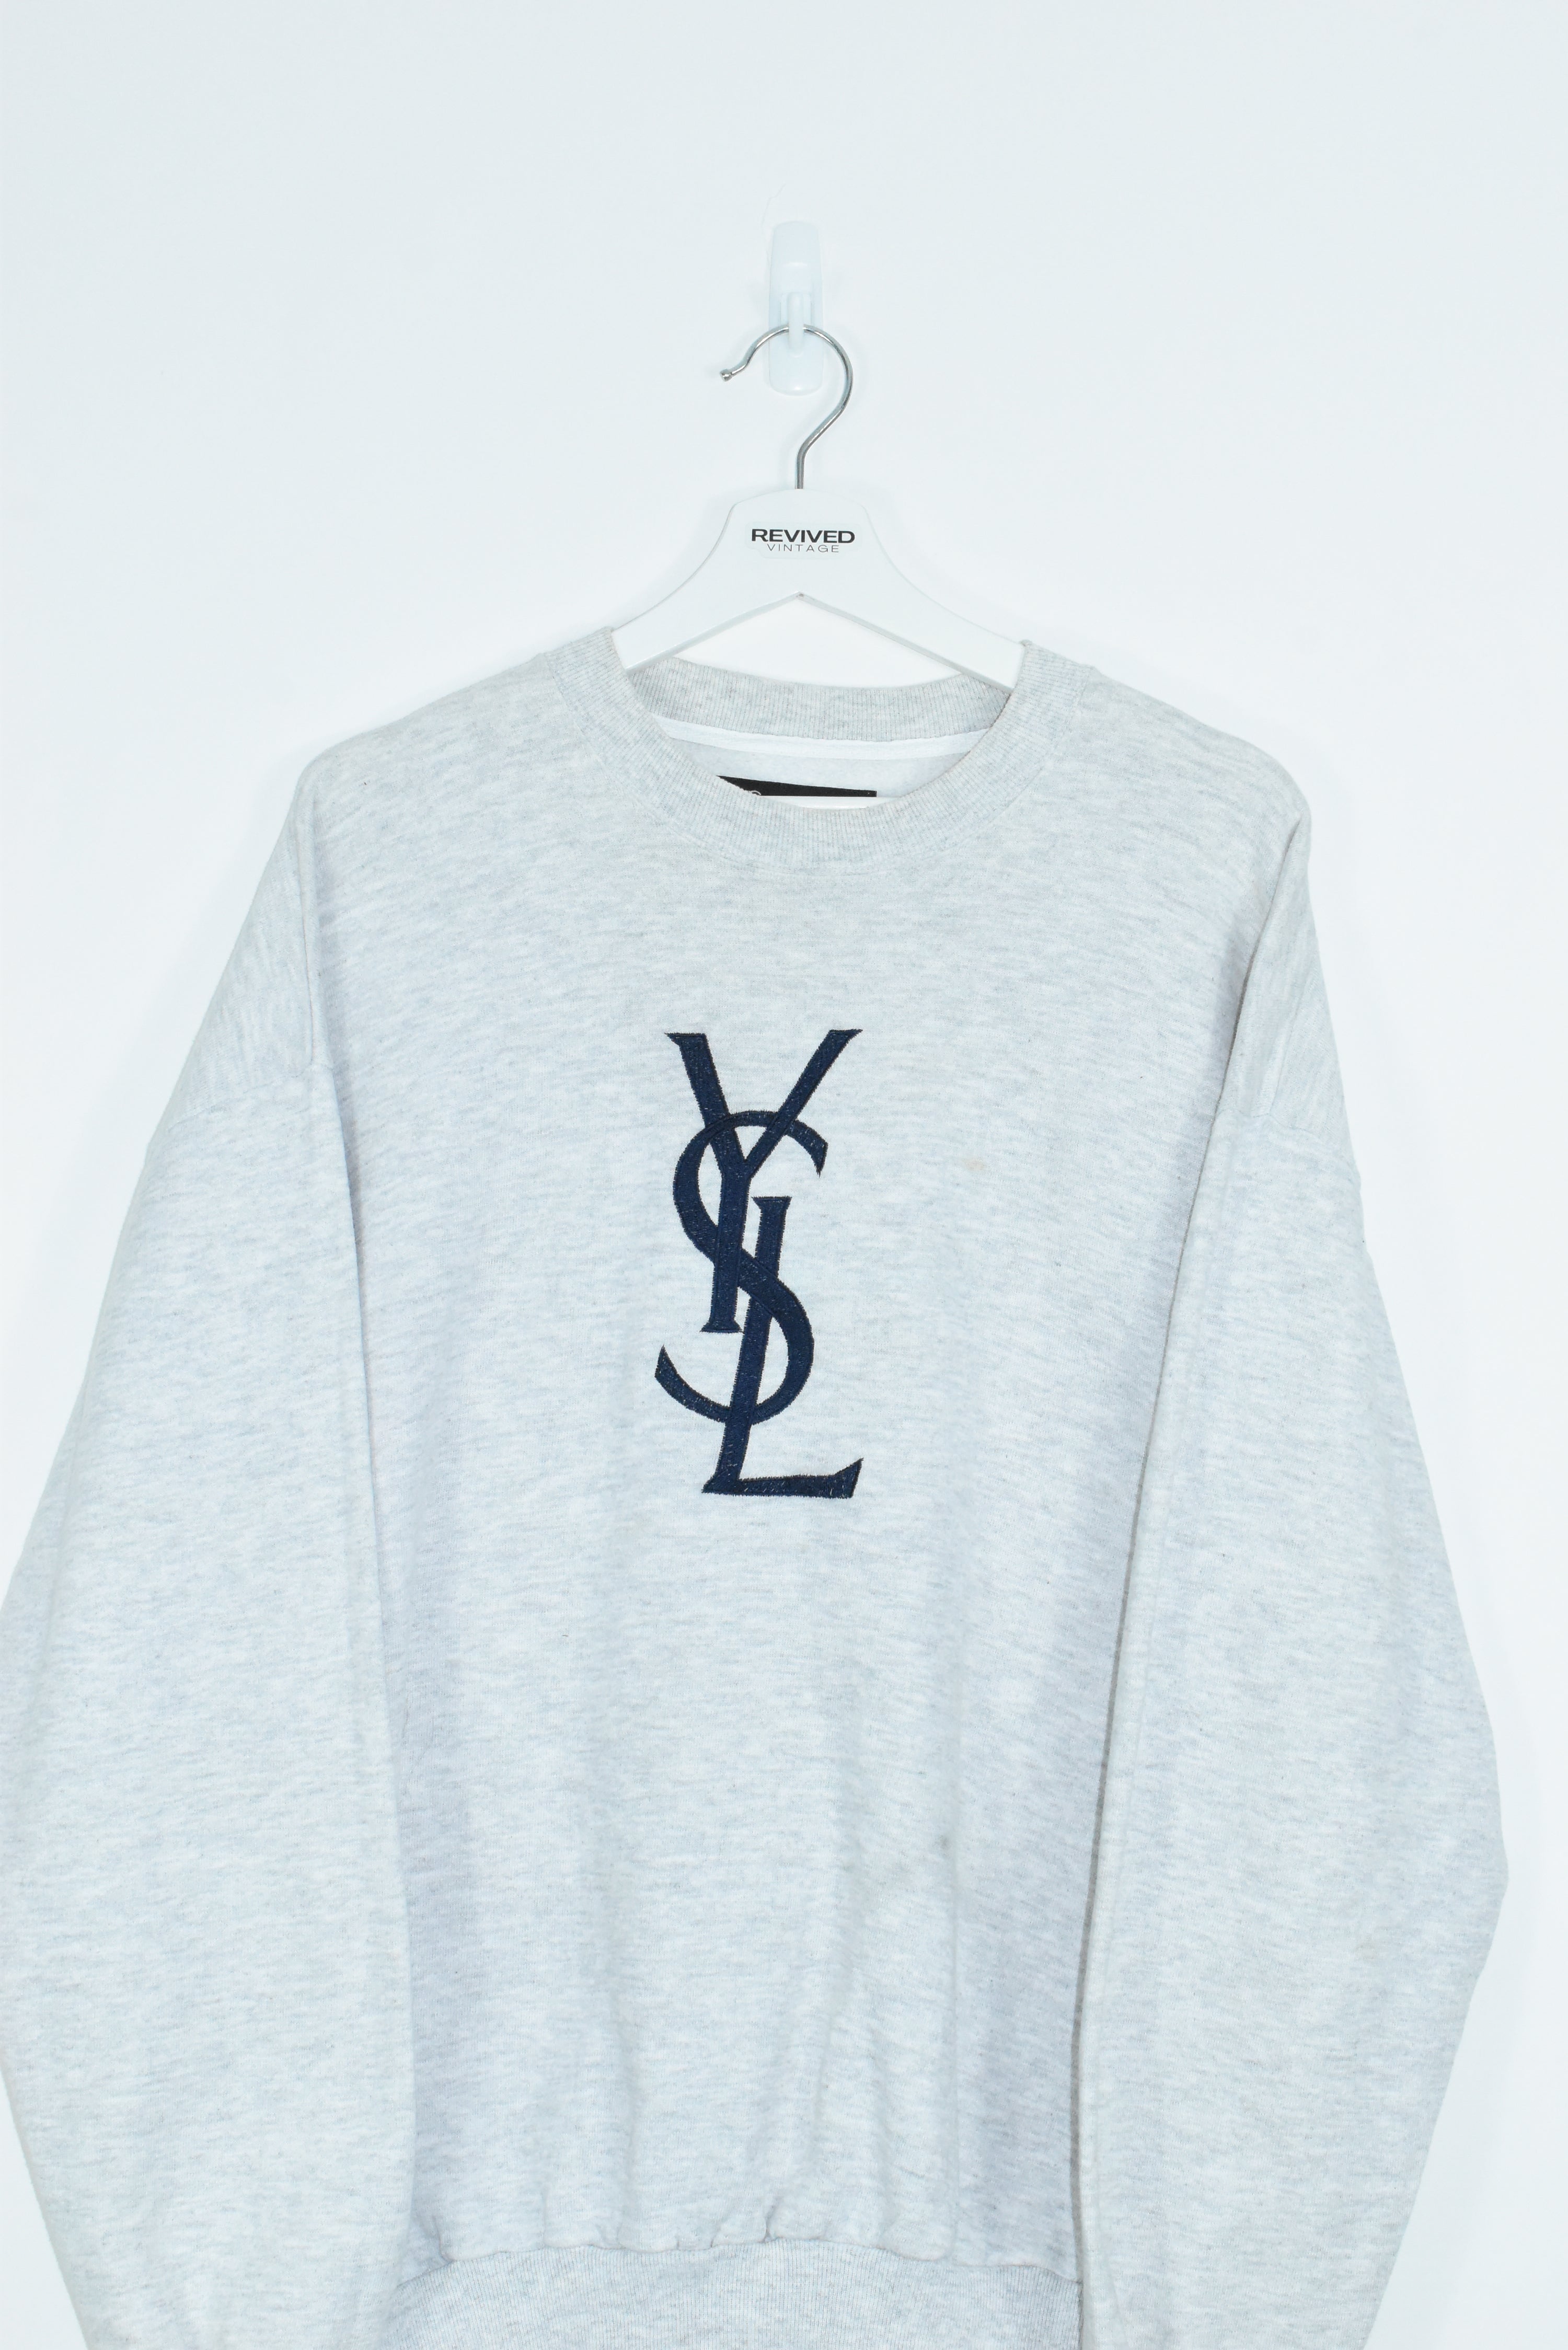 Vintage YSL Embroidery Bootleg Sweatshirt XLARGE